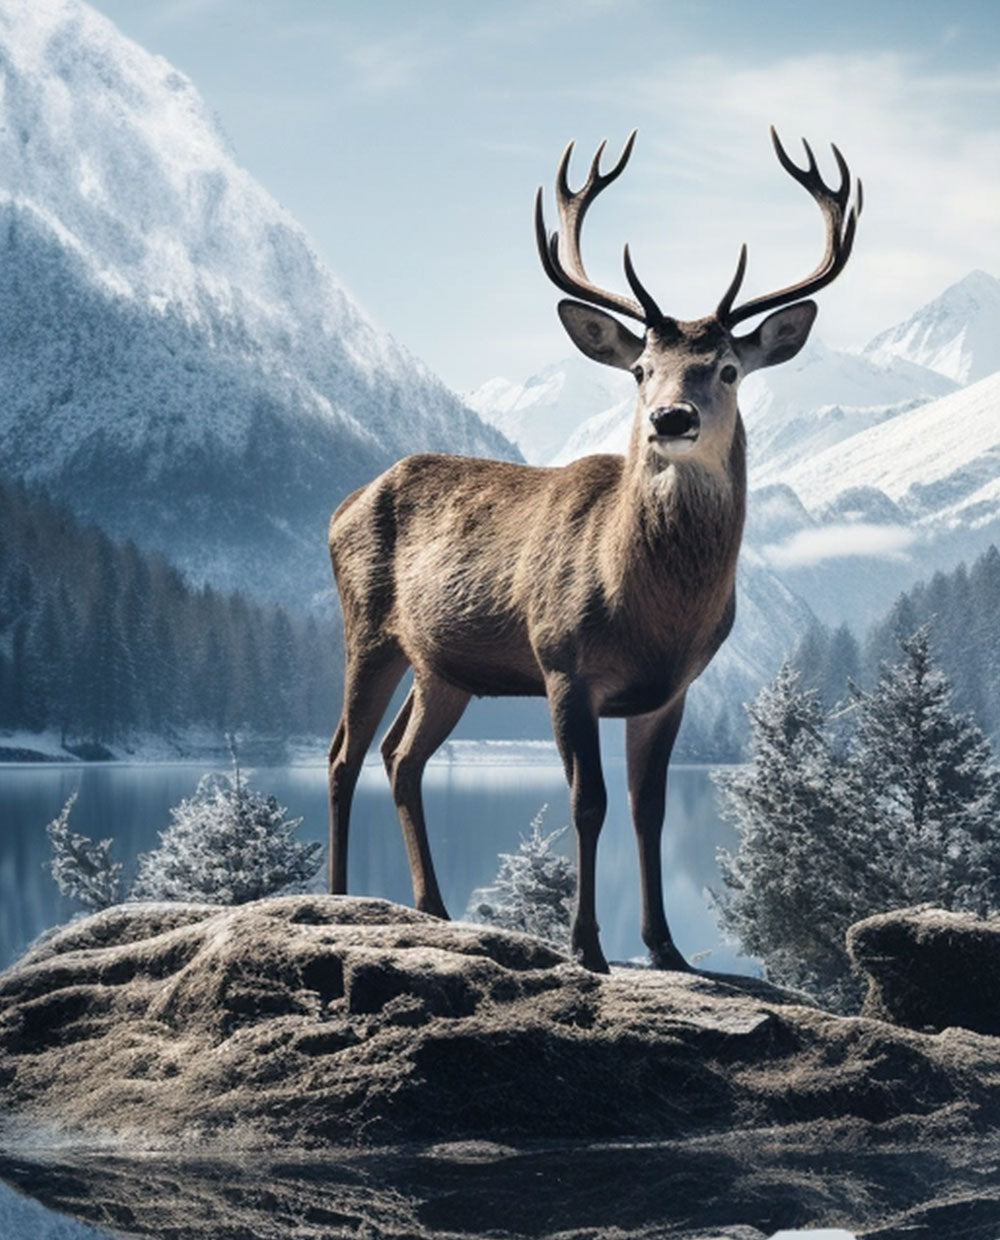 A winter deer